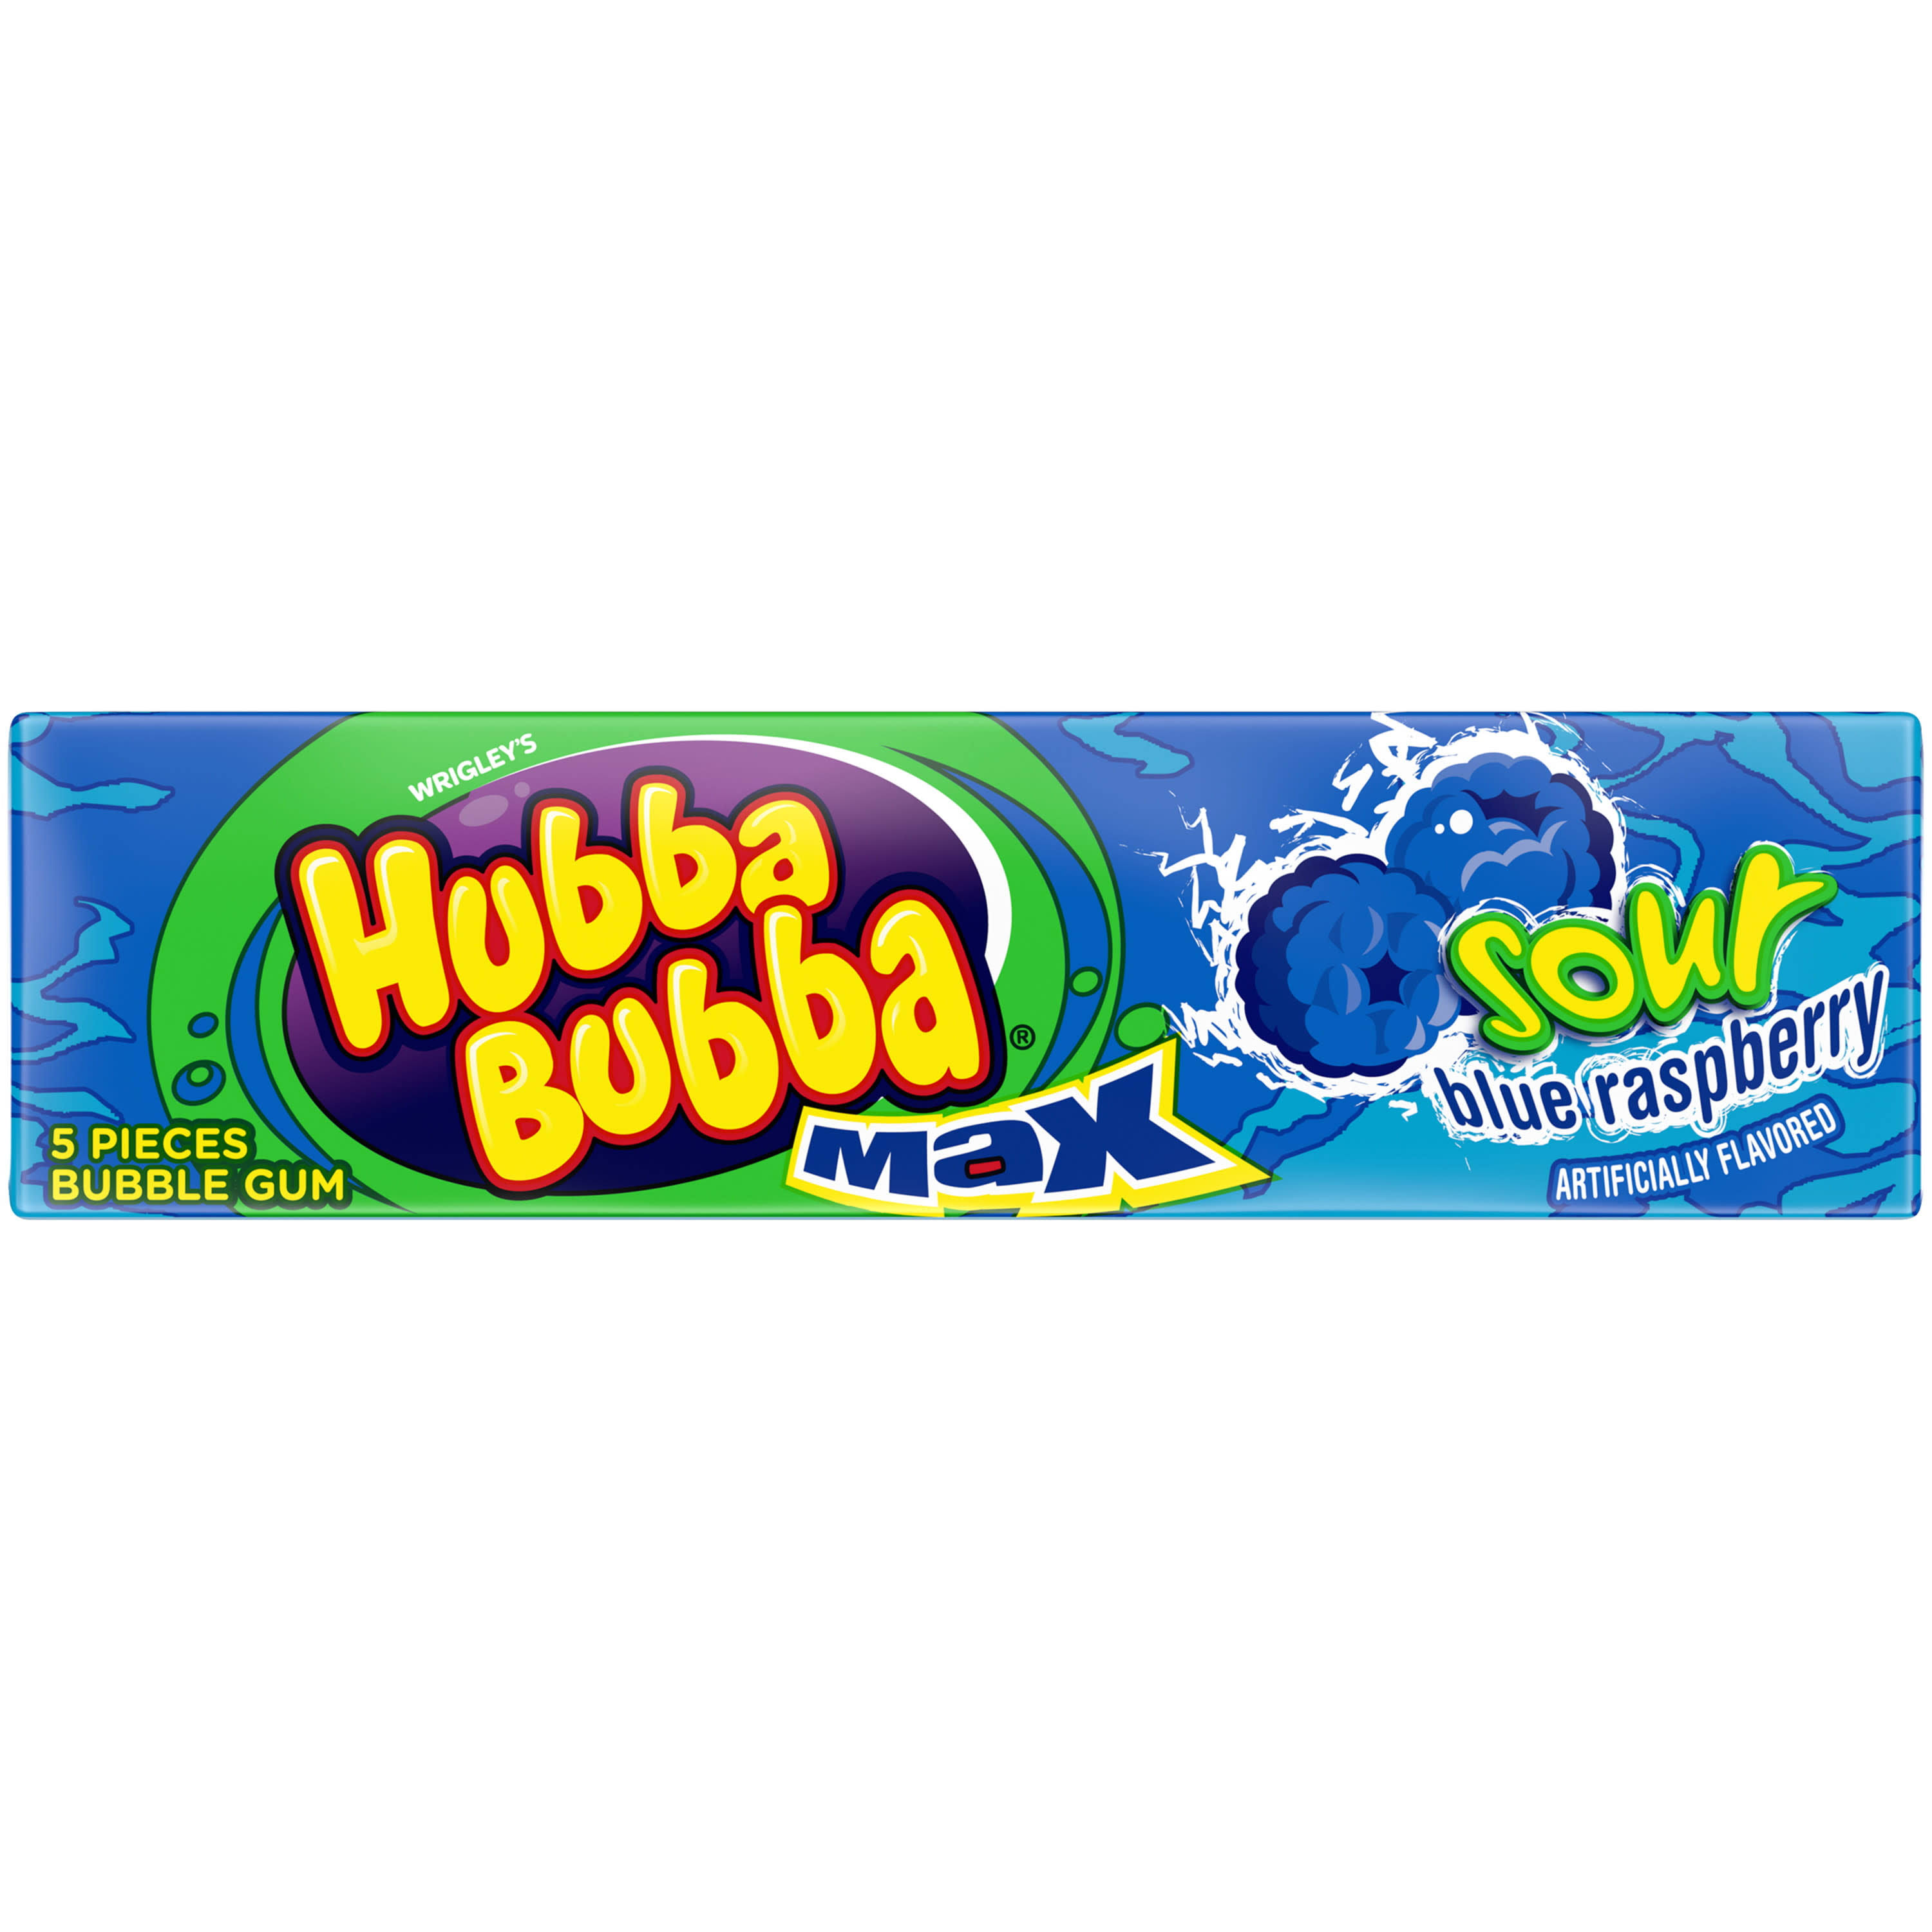 Hubba Bubba Bubble Gum, Sour Blue Raspberry, Max - 5 pieces bubble gum